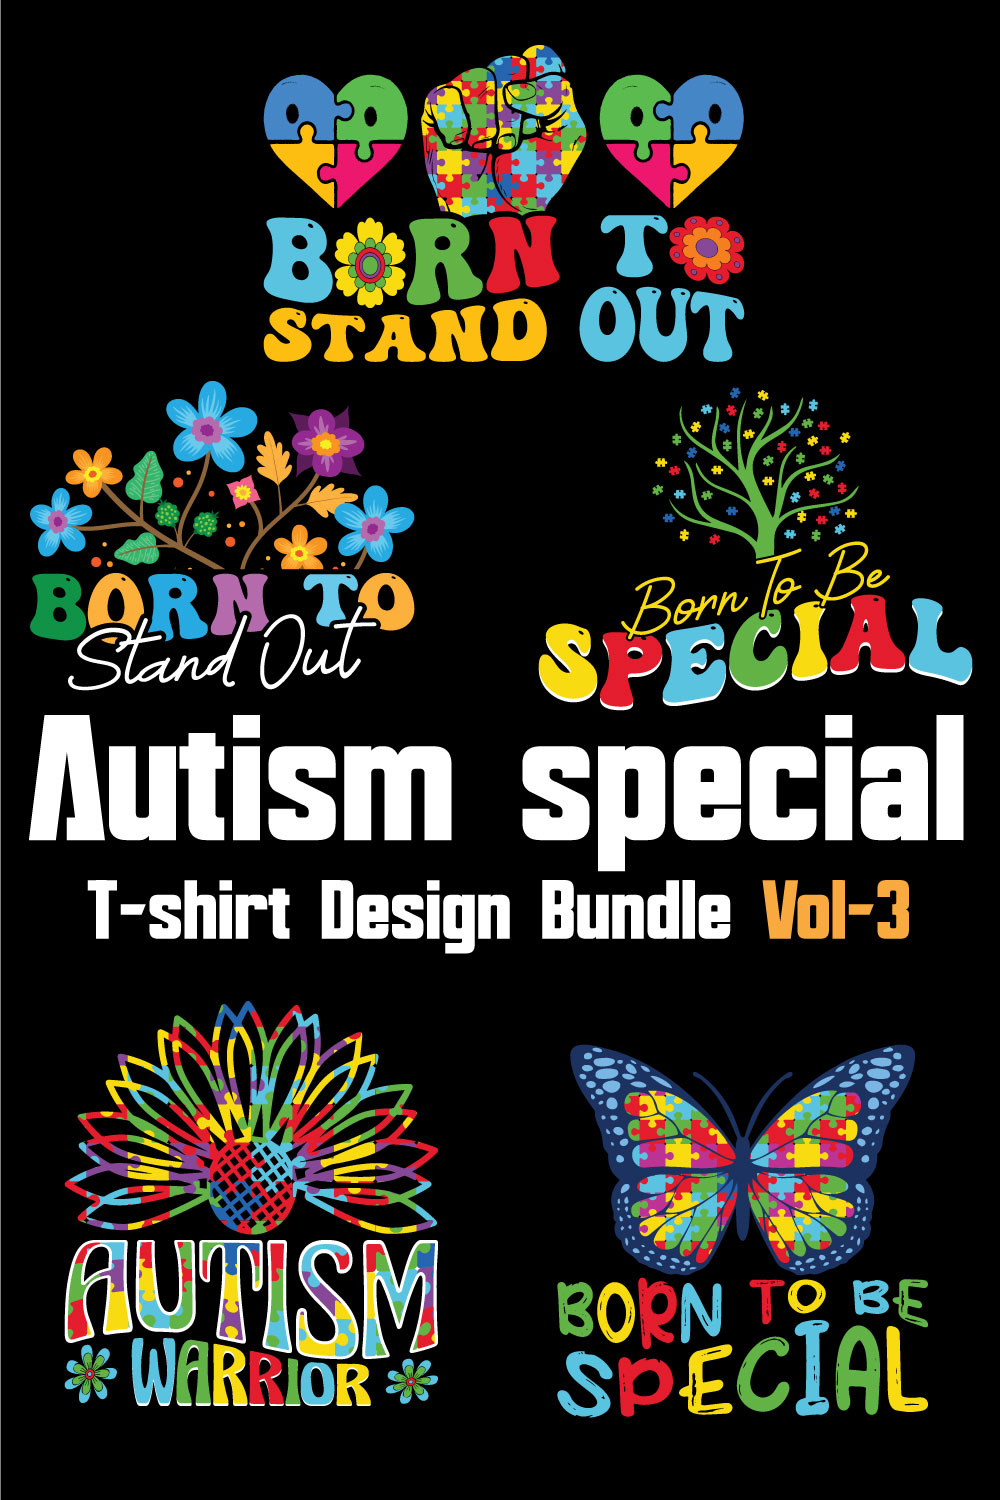 Autism Special T-shirt Design Bundle Vol-3 pinterest preview image.